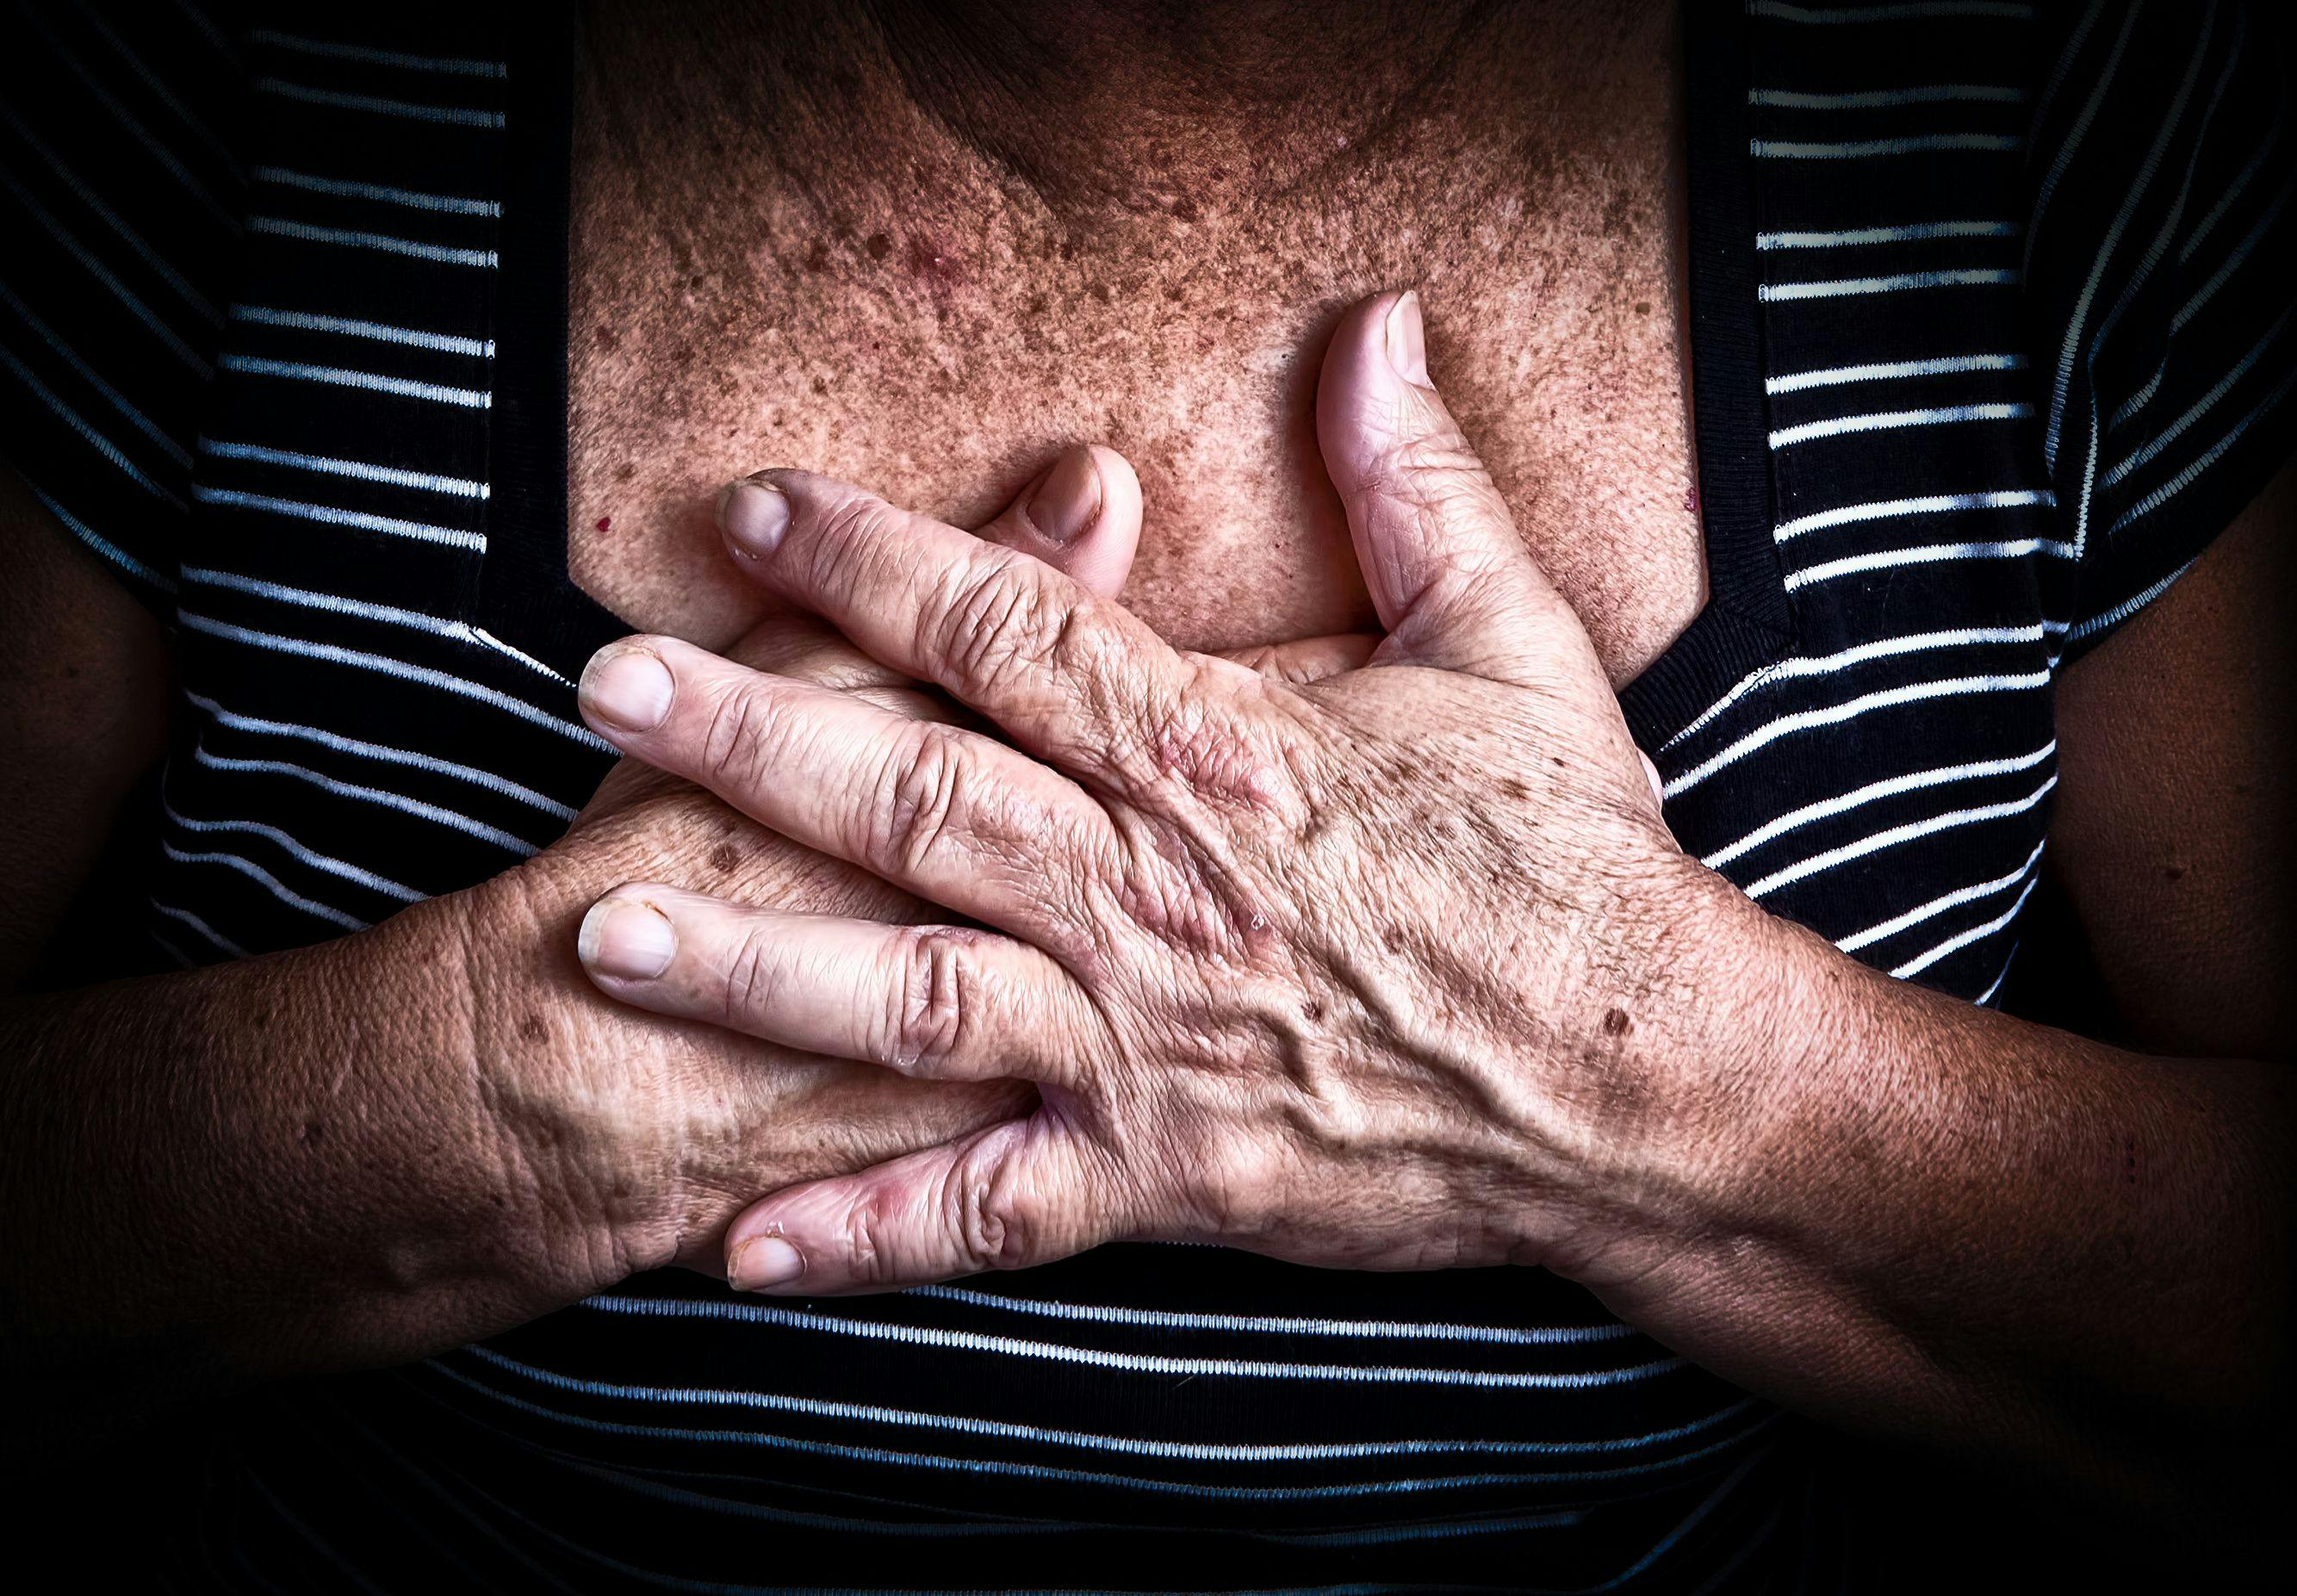 Heart Disease Often Missed in Rheumatoid Arthritis